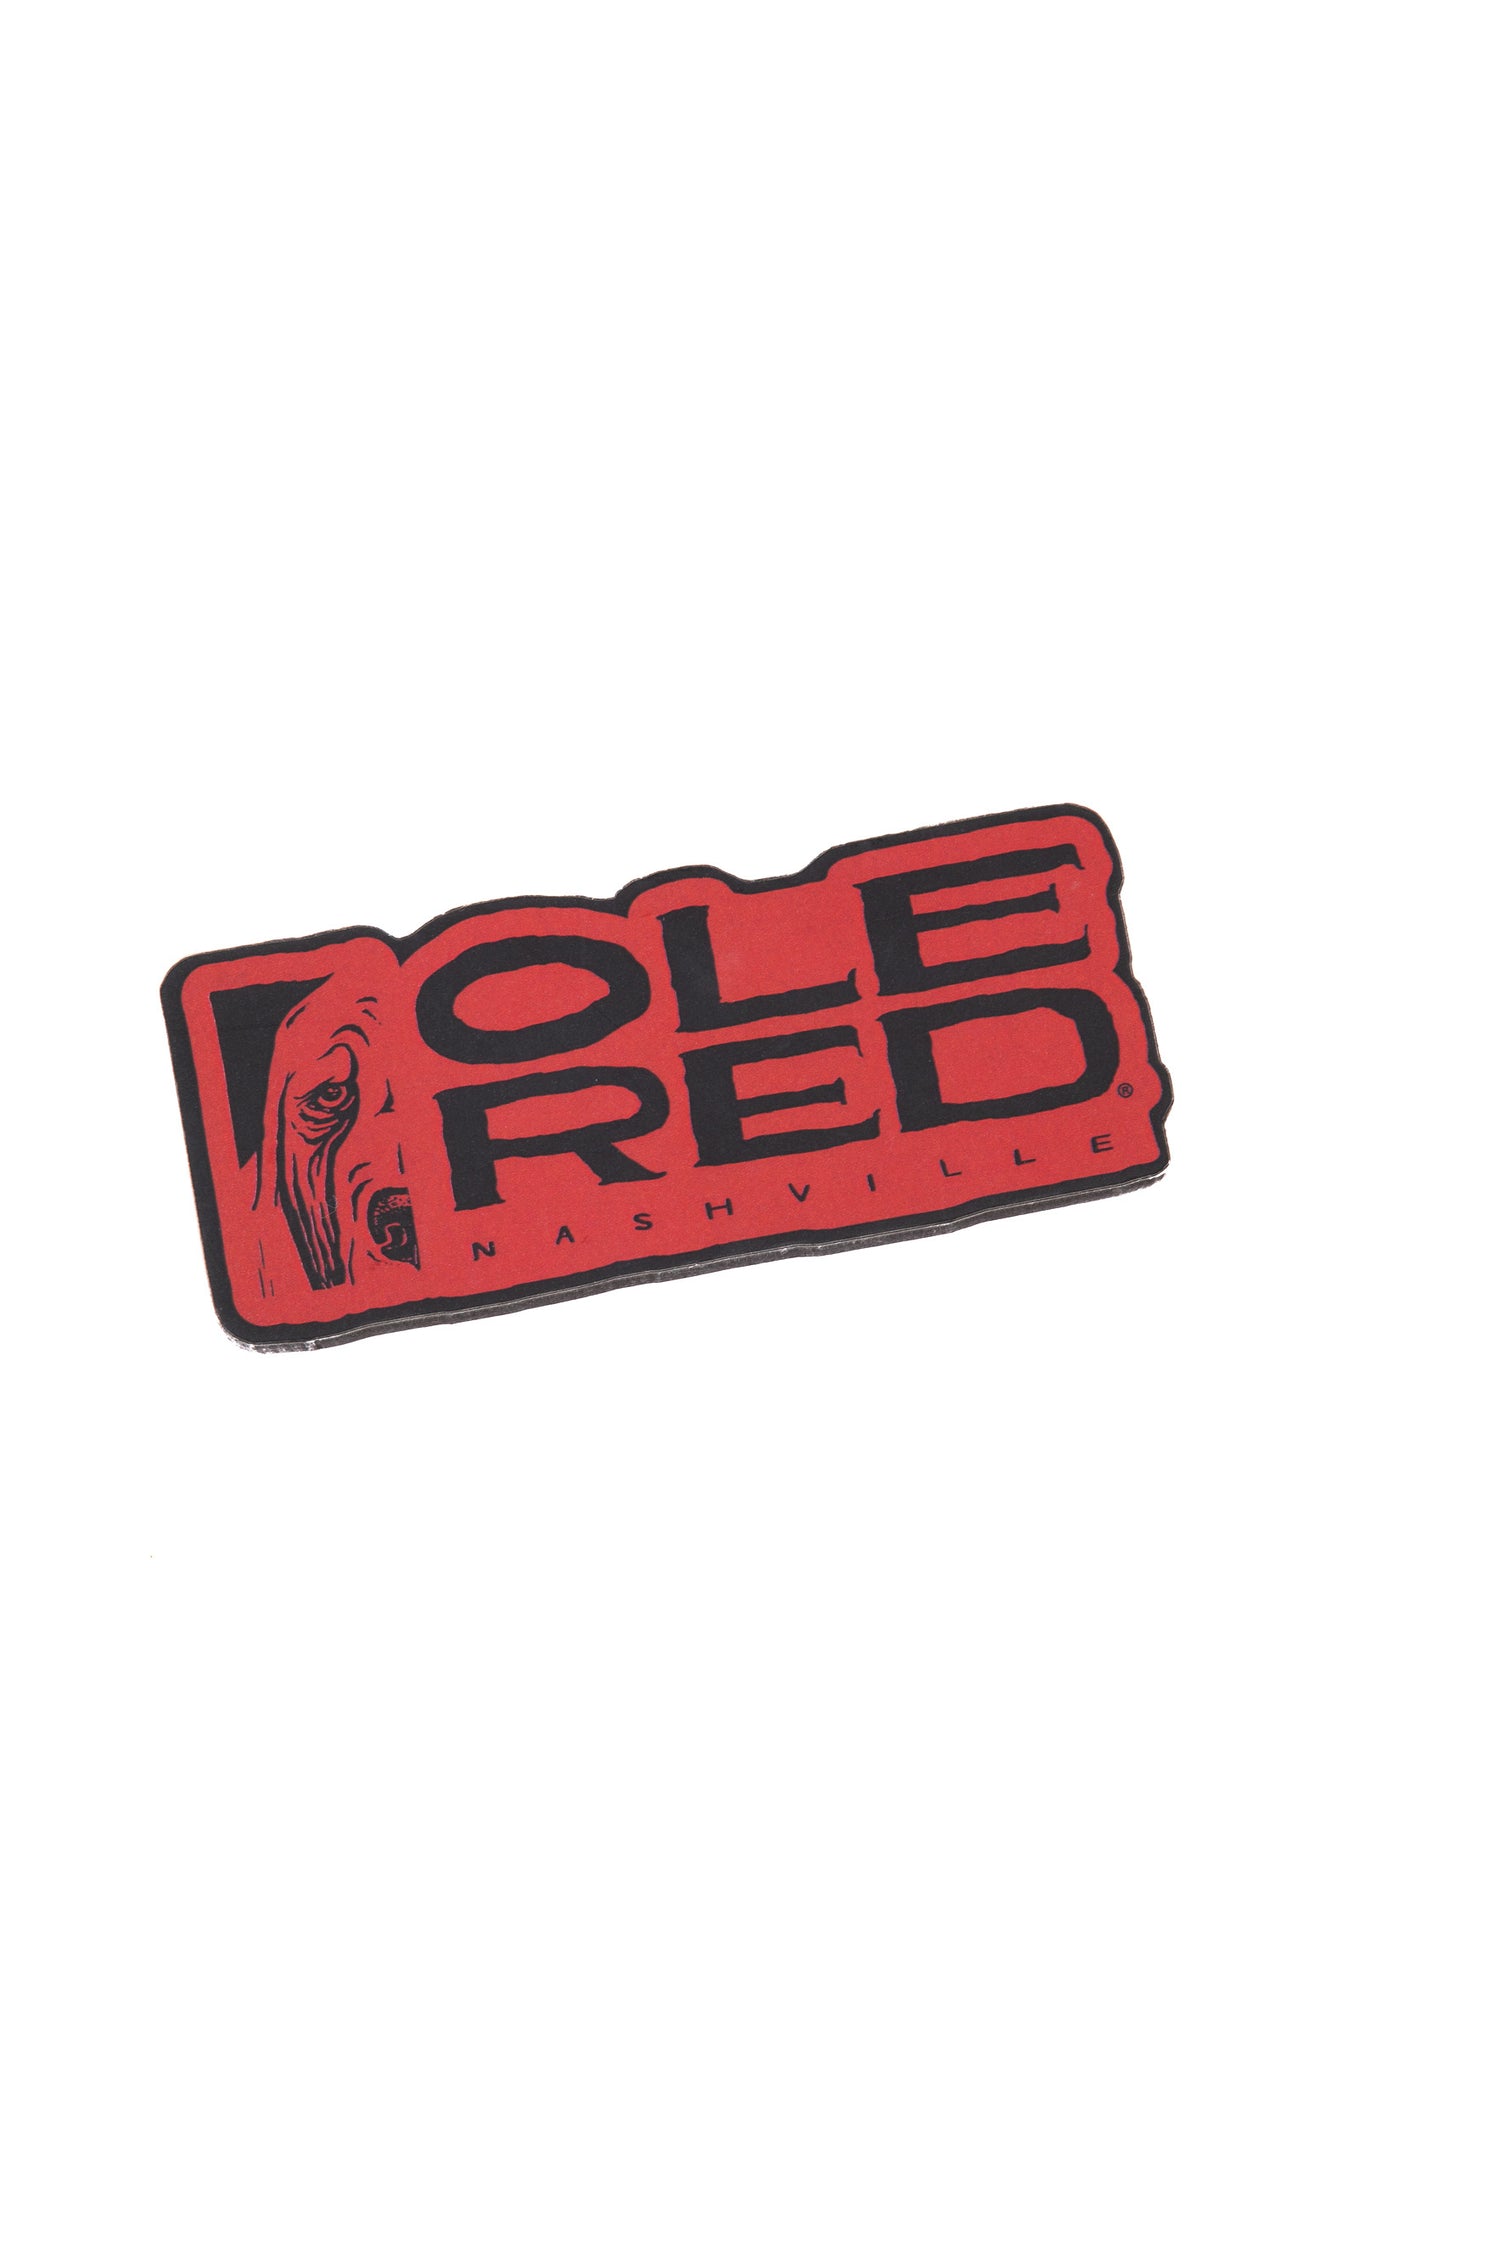 Ole Red Nashville Logo Magnet